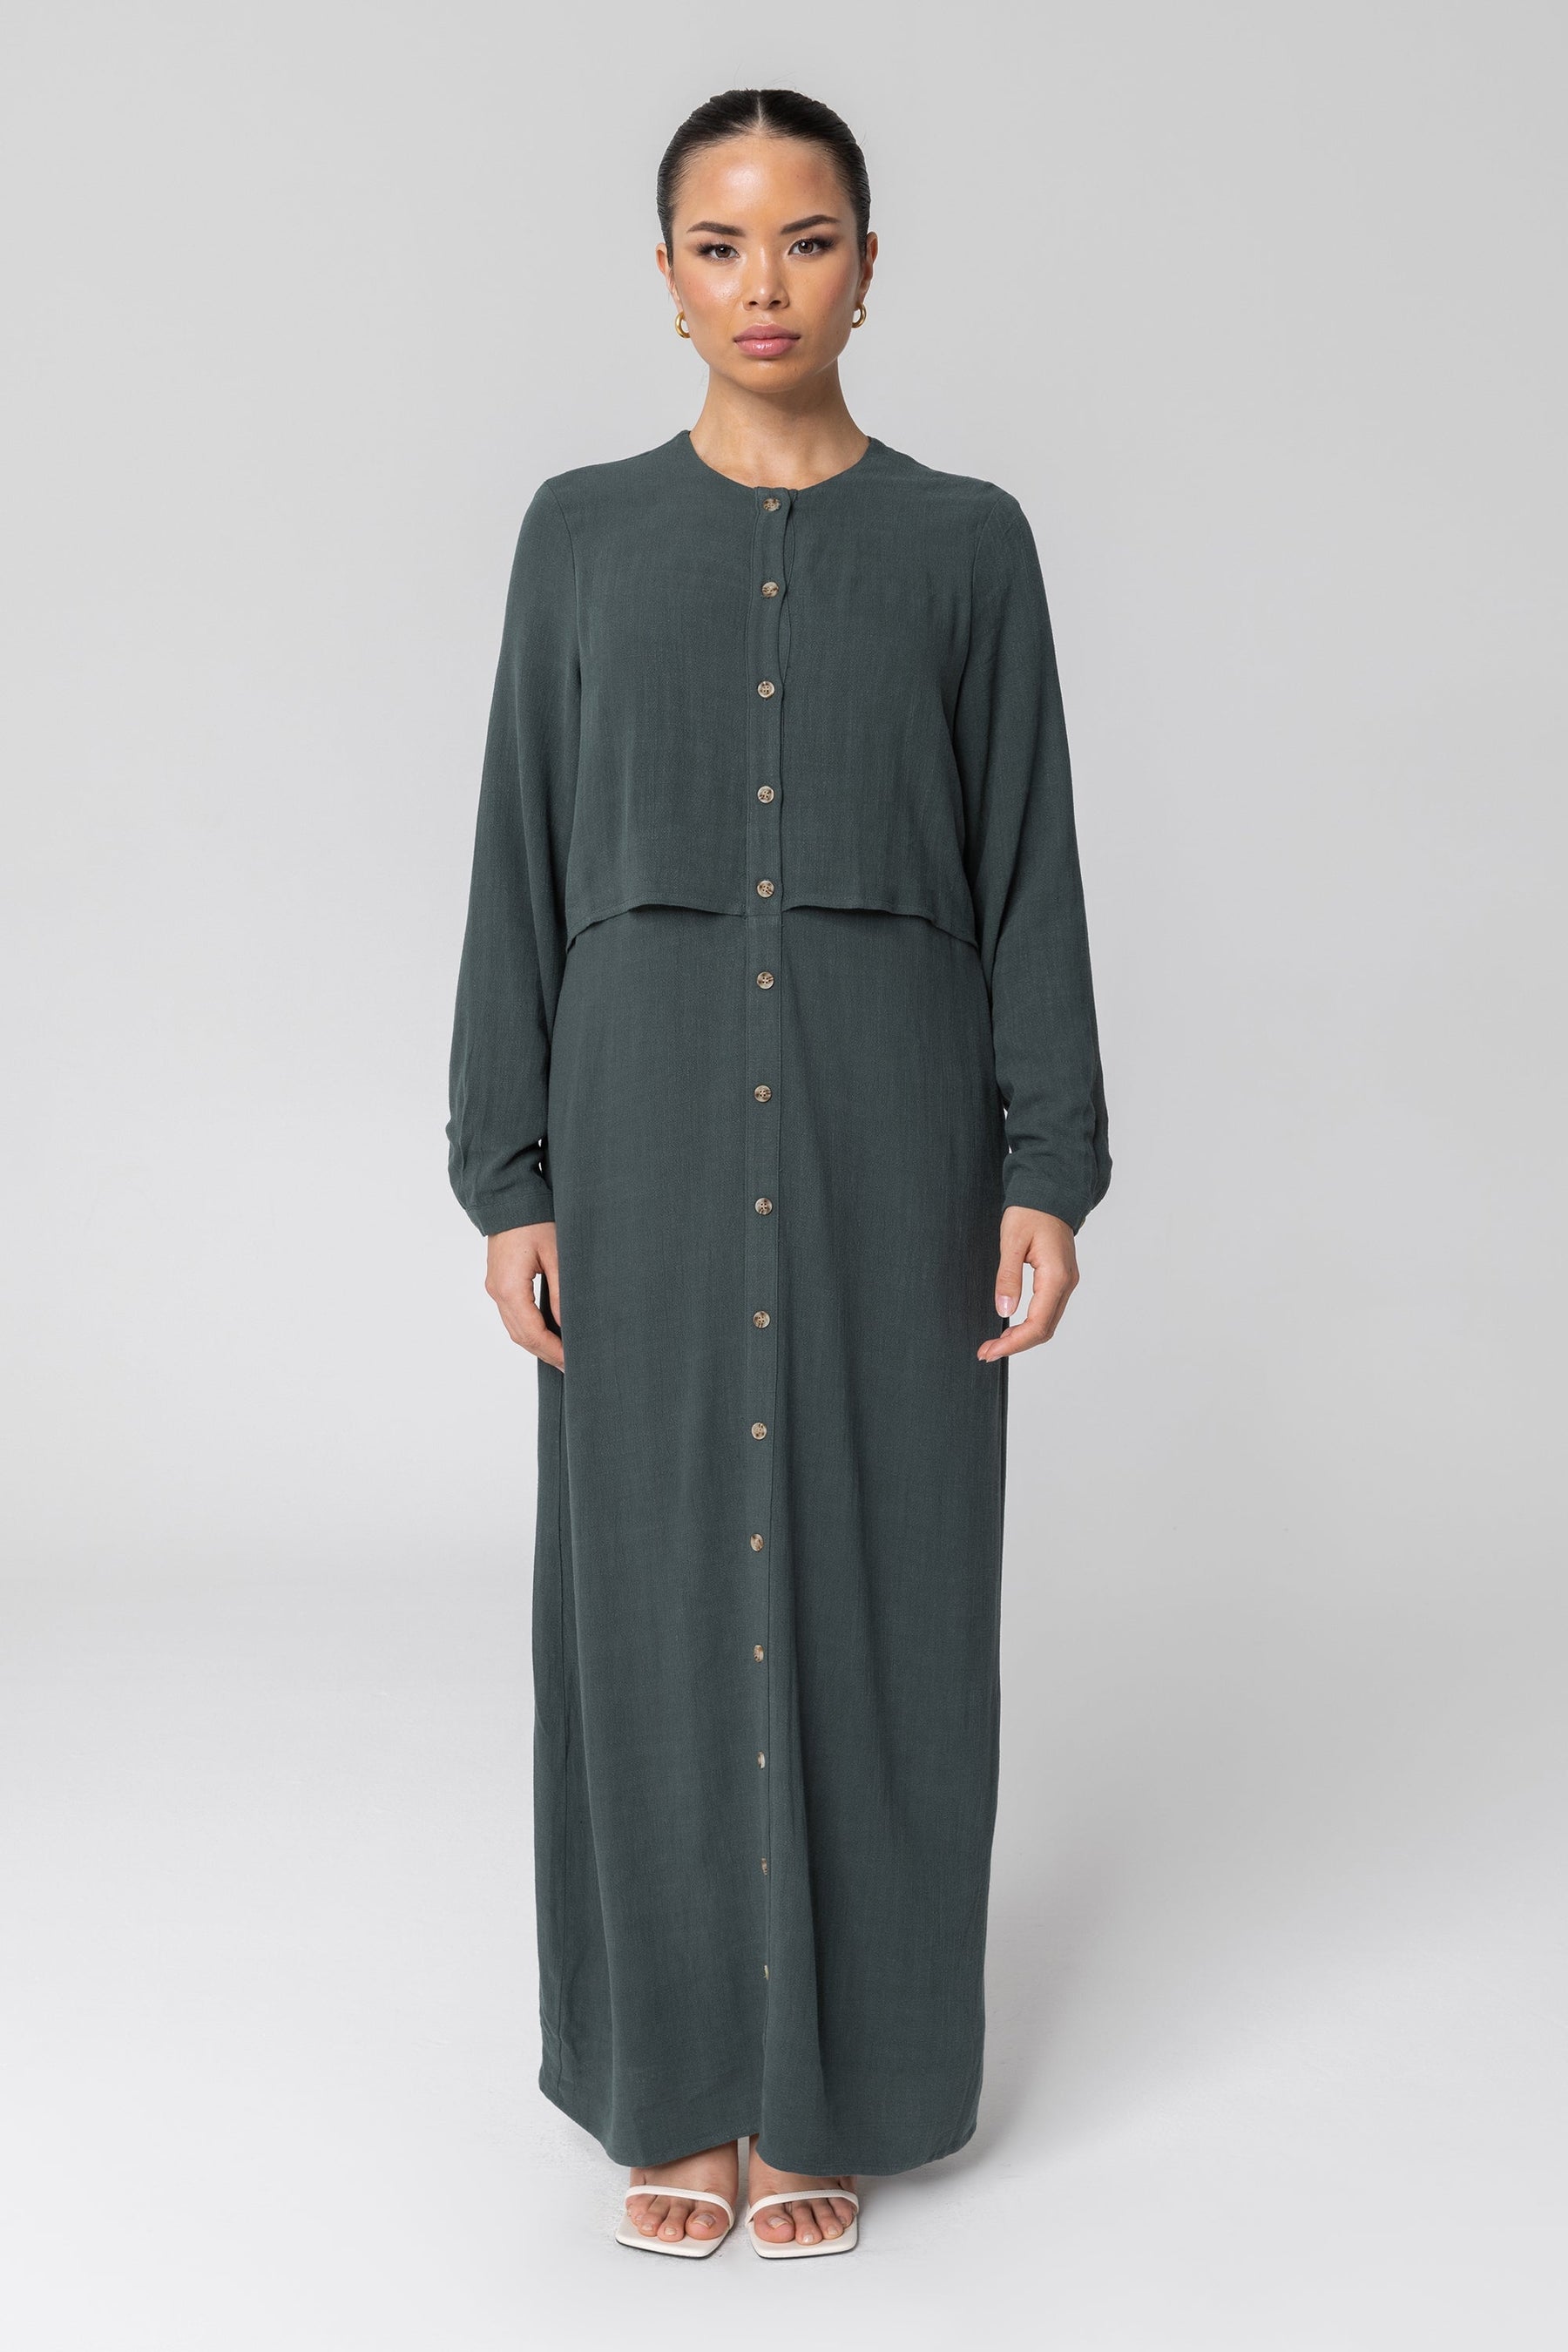 Sabah Cotton Linen Overlay Maxi Shirt Dress - Teal Veiled 